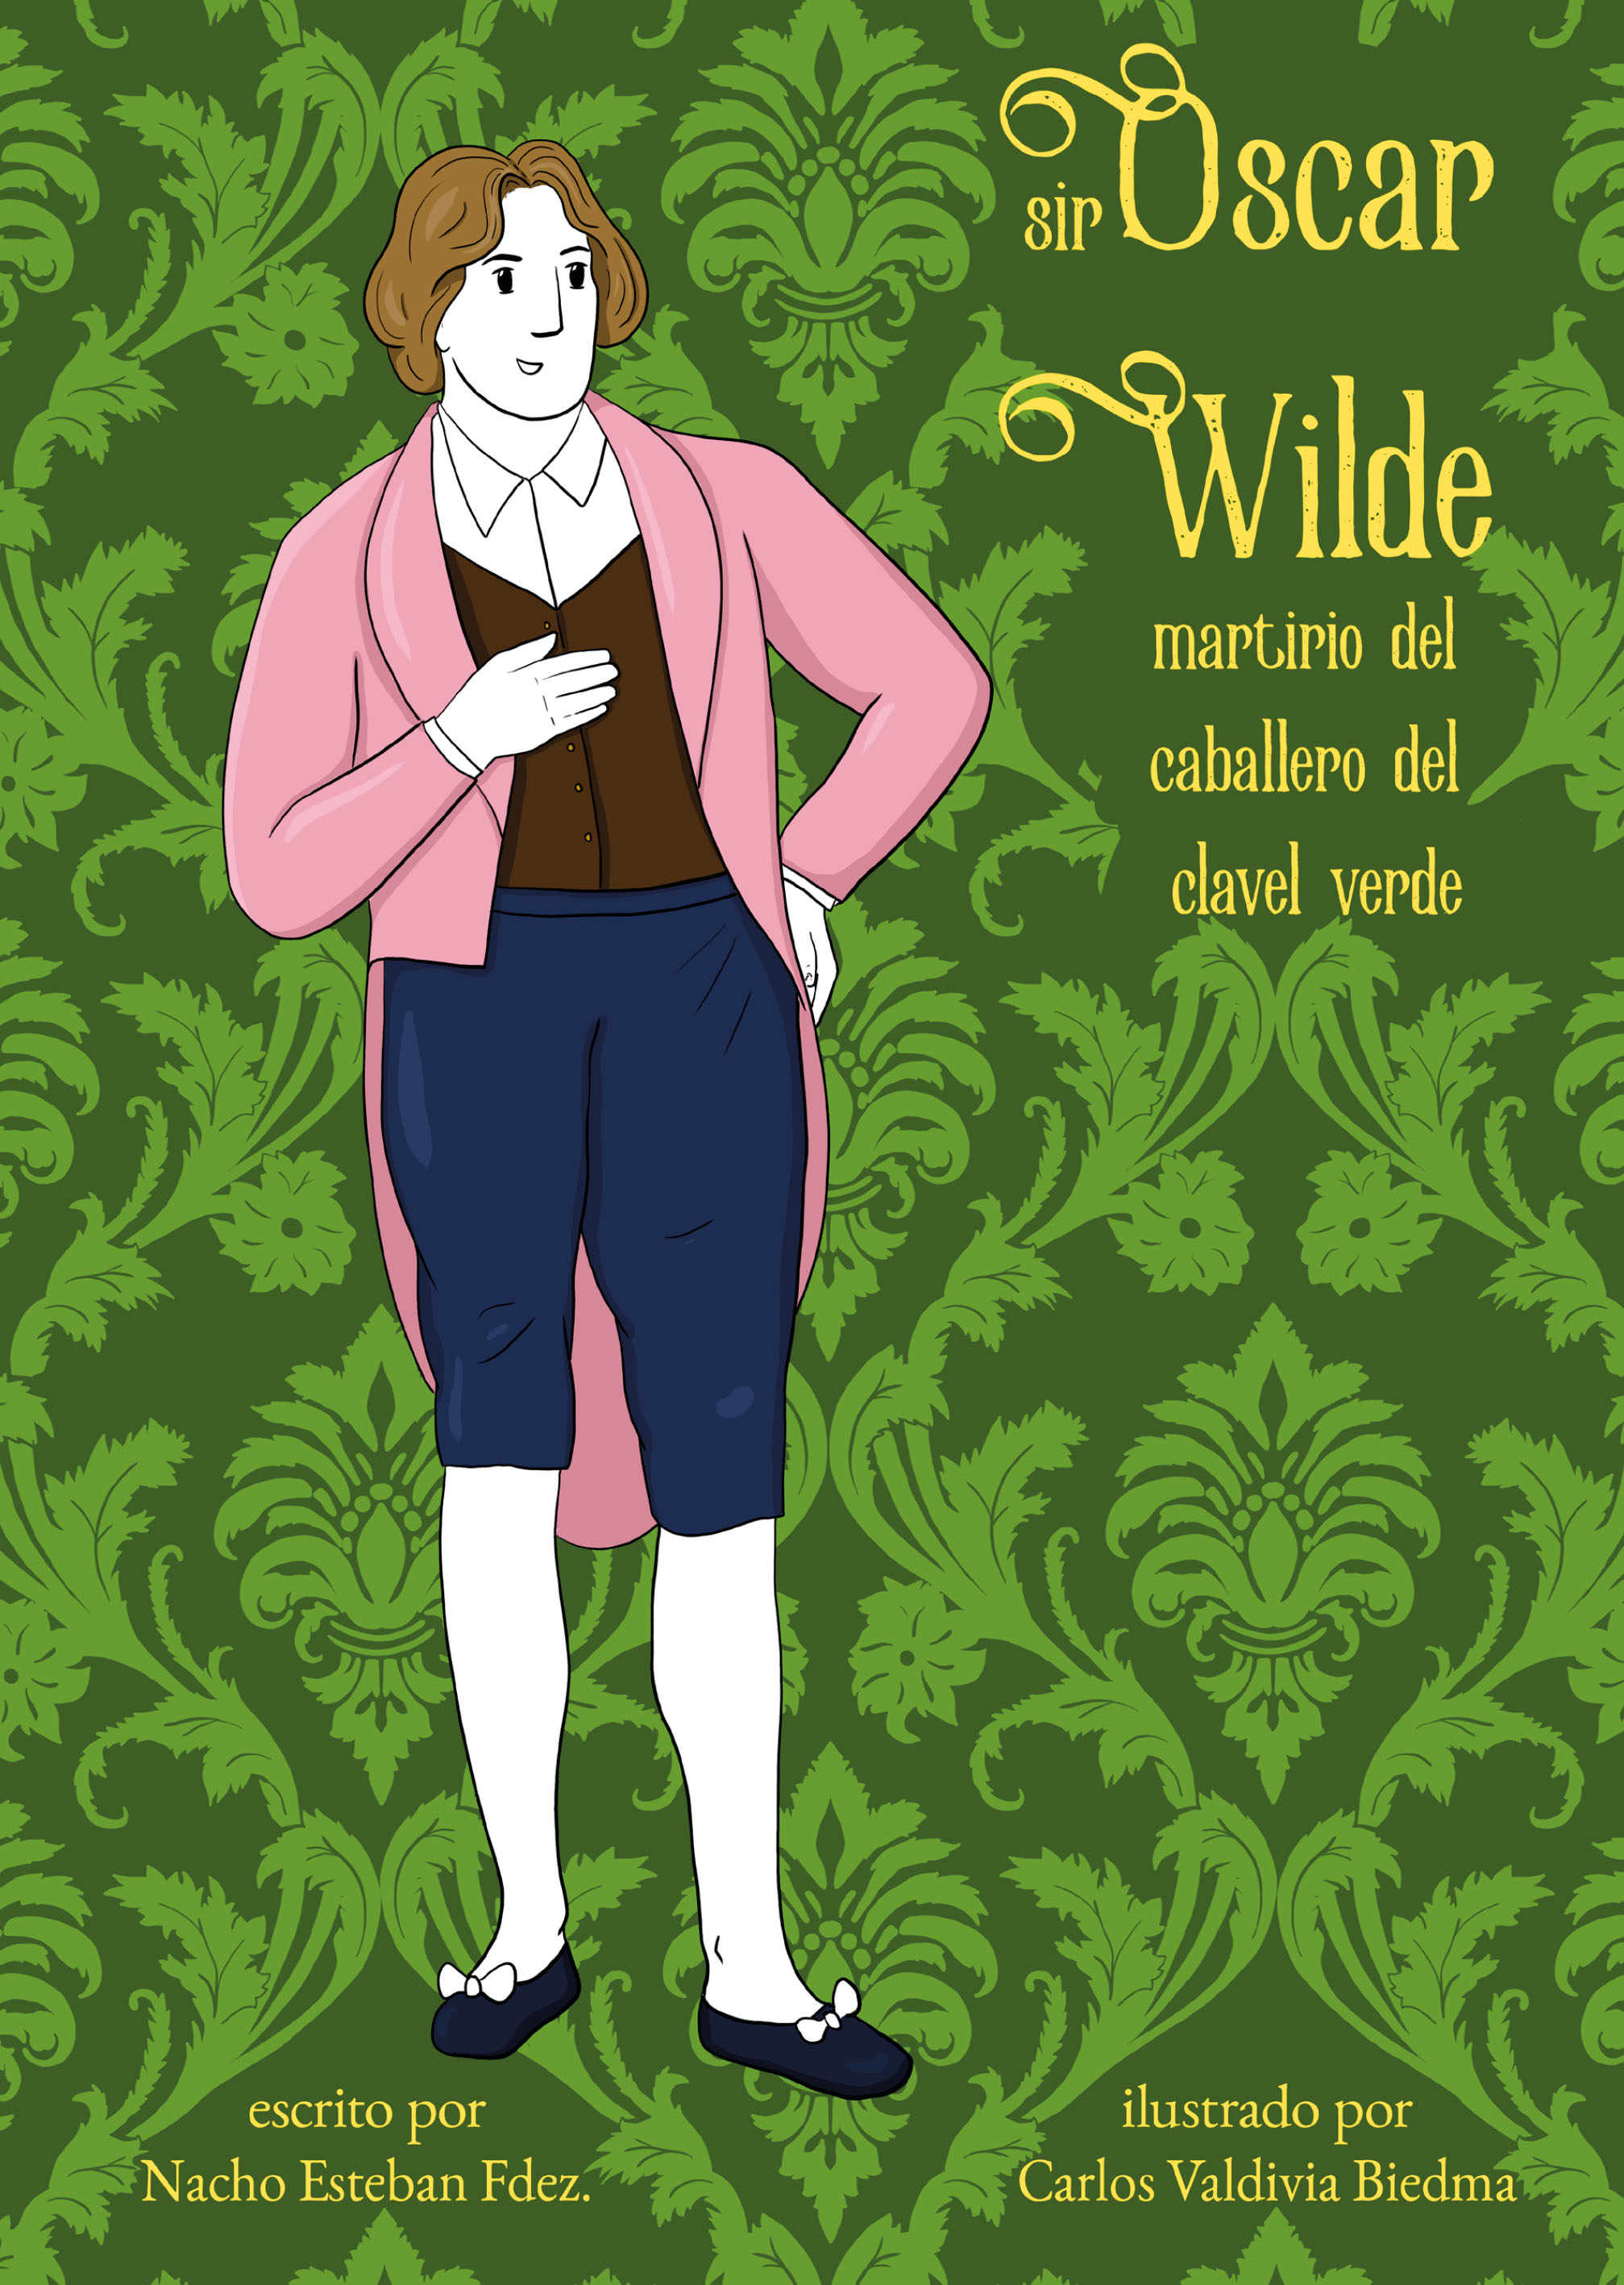 "Vengaremos a Oscar Wilde": todos los secretos del genio gay condenado por "sodomita" y rebelde